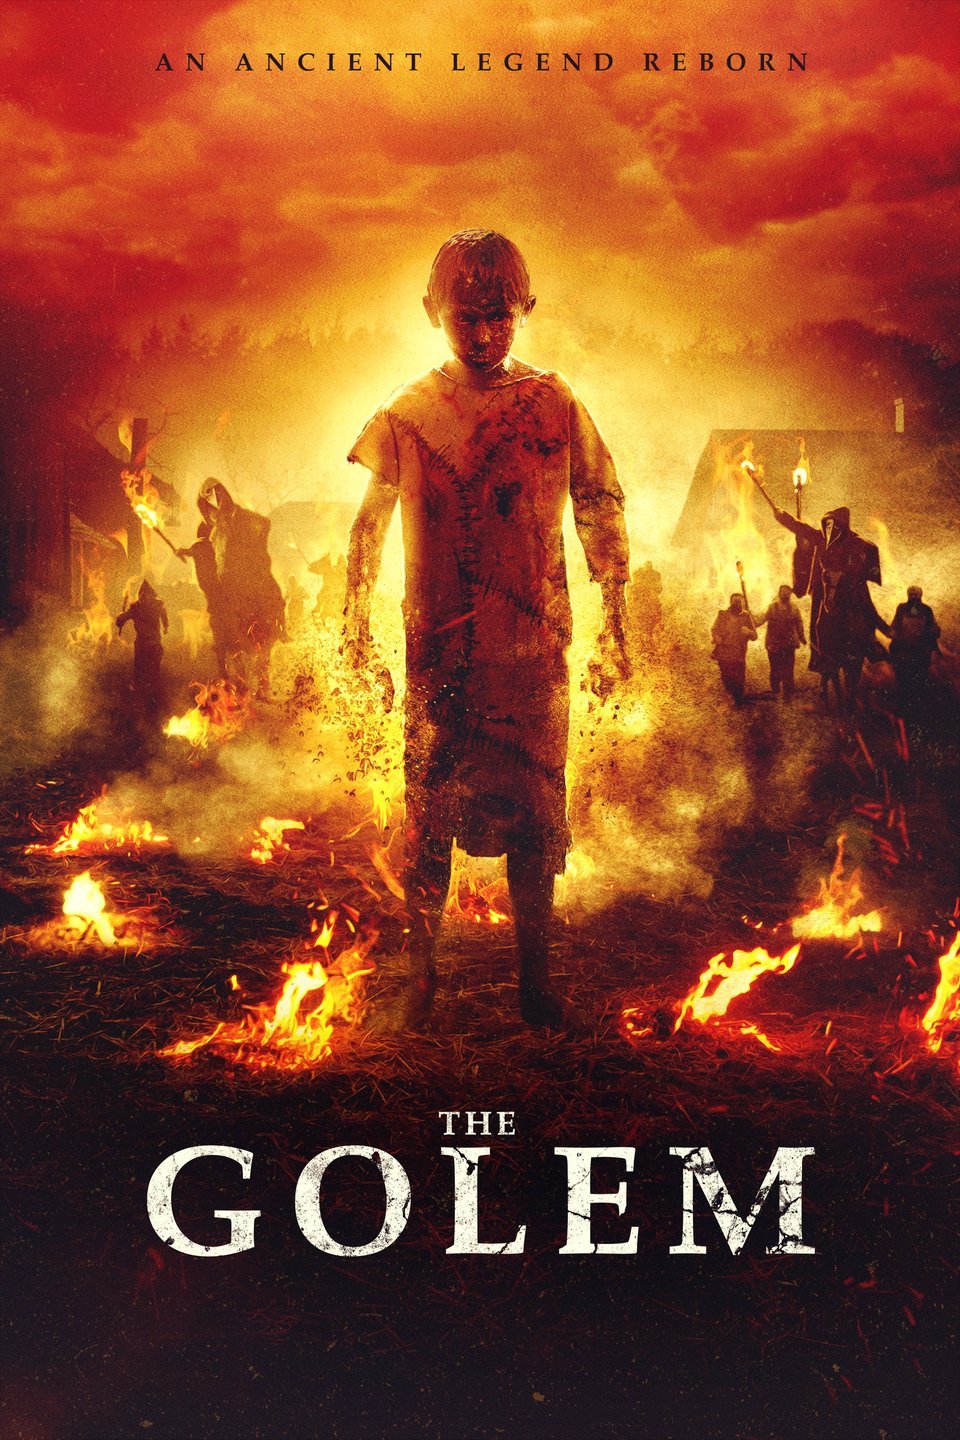 [ฝรั่ง] The Golem (2018) อมนุษย์พิทักษ์หมู่บ้าน [1080p] [พากย์อังกฤษ 5.1] [Soundtrack บรรยายไทย (แปล)] [เสียงอังกฤษ + ซับไทย] [OPENLOAD]